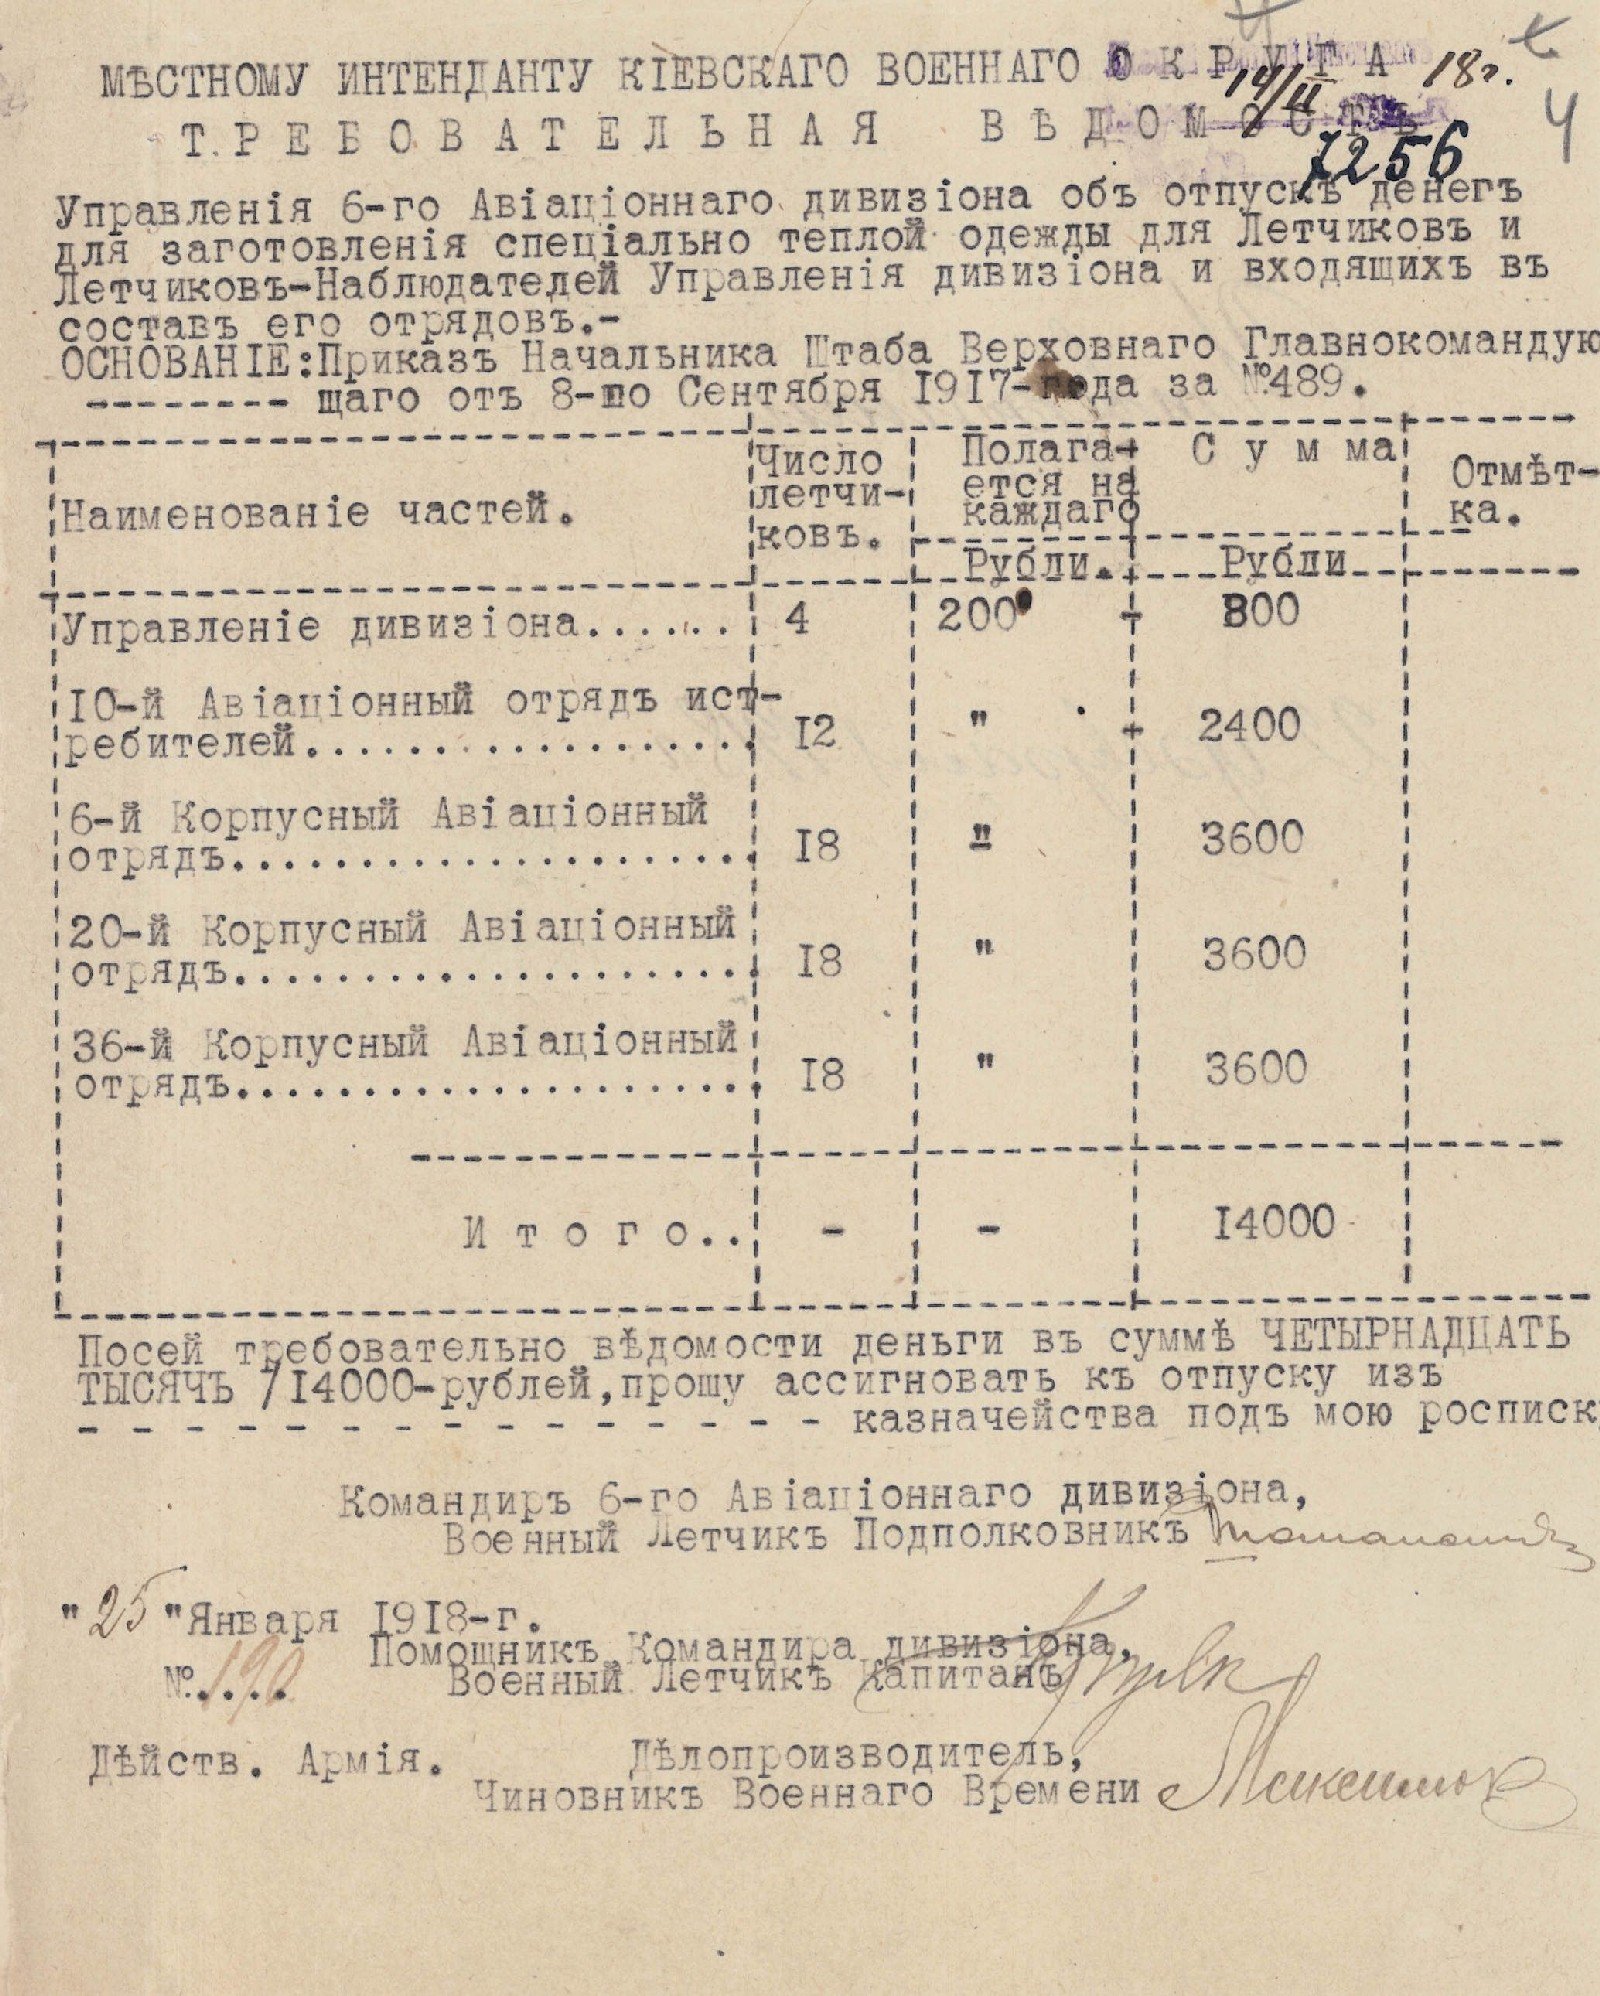 Відомість Управління авіаційного дивізіону про надання коштів для придбання спеціального теплого одягу для льотчиків. 14 лютого 1918 р.